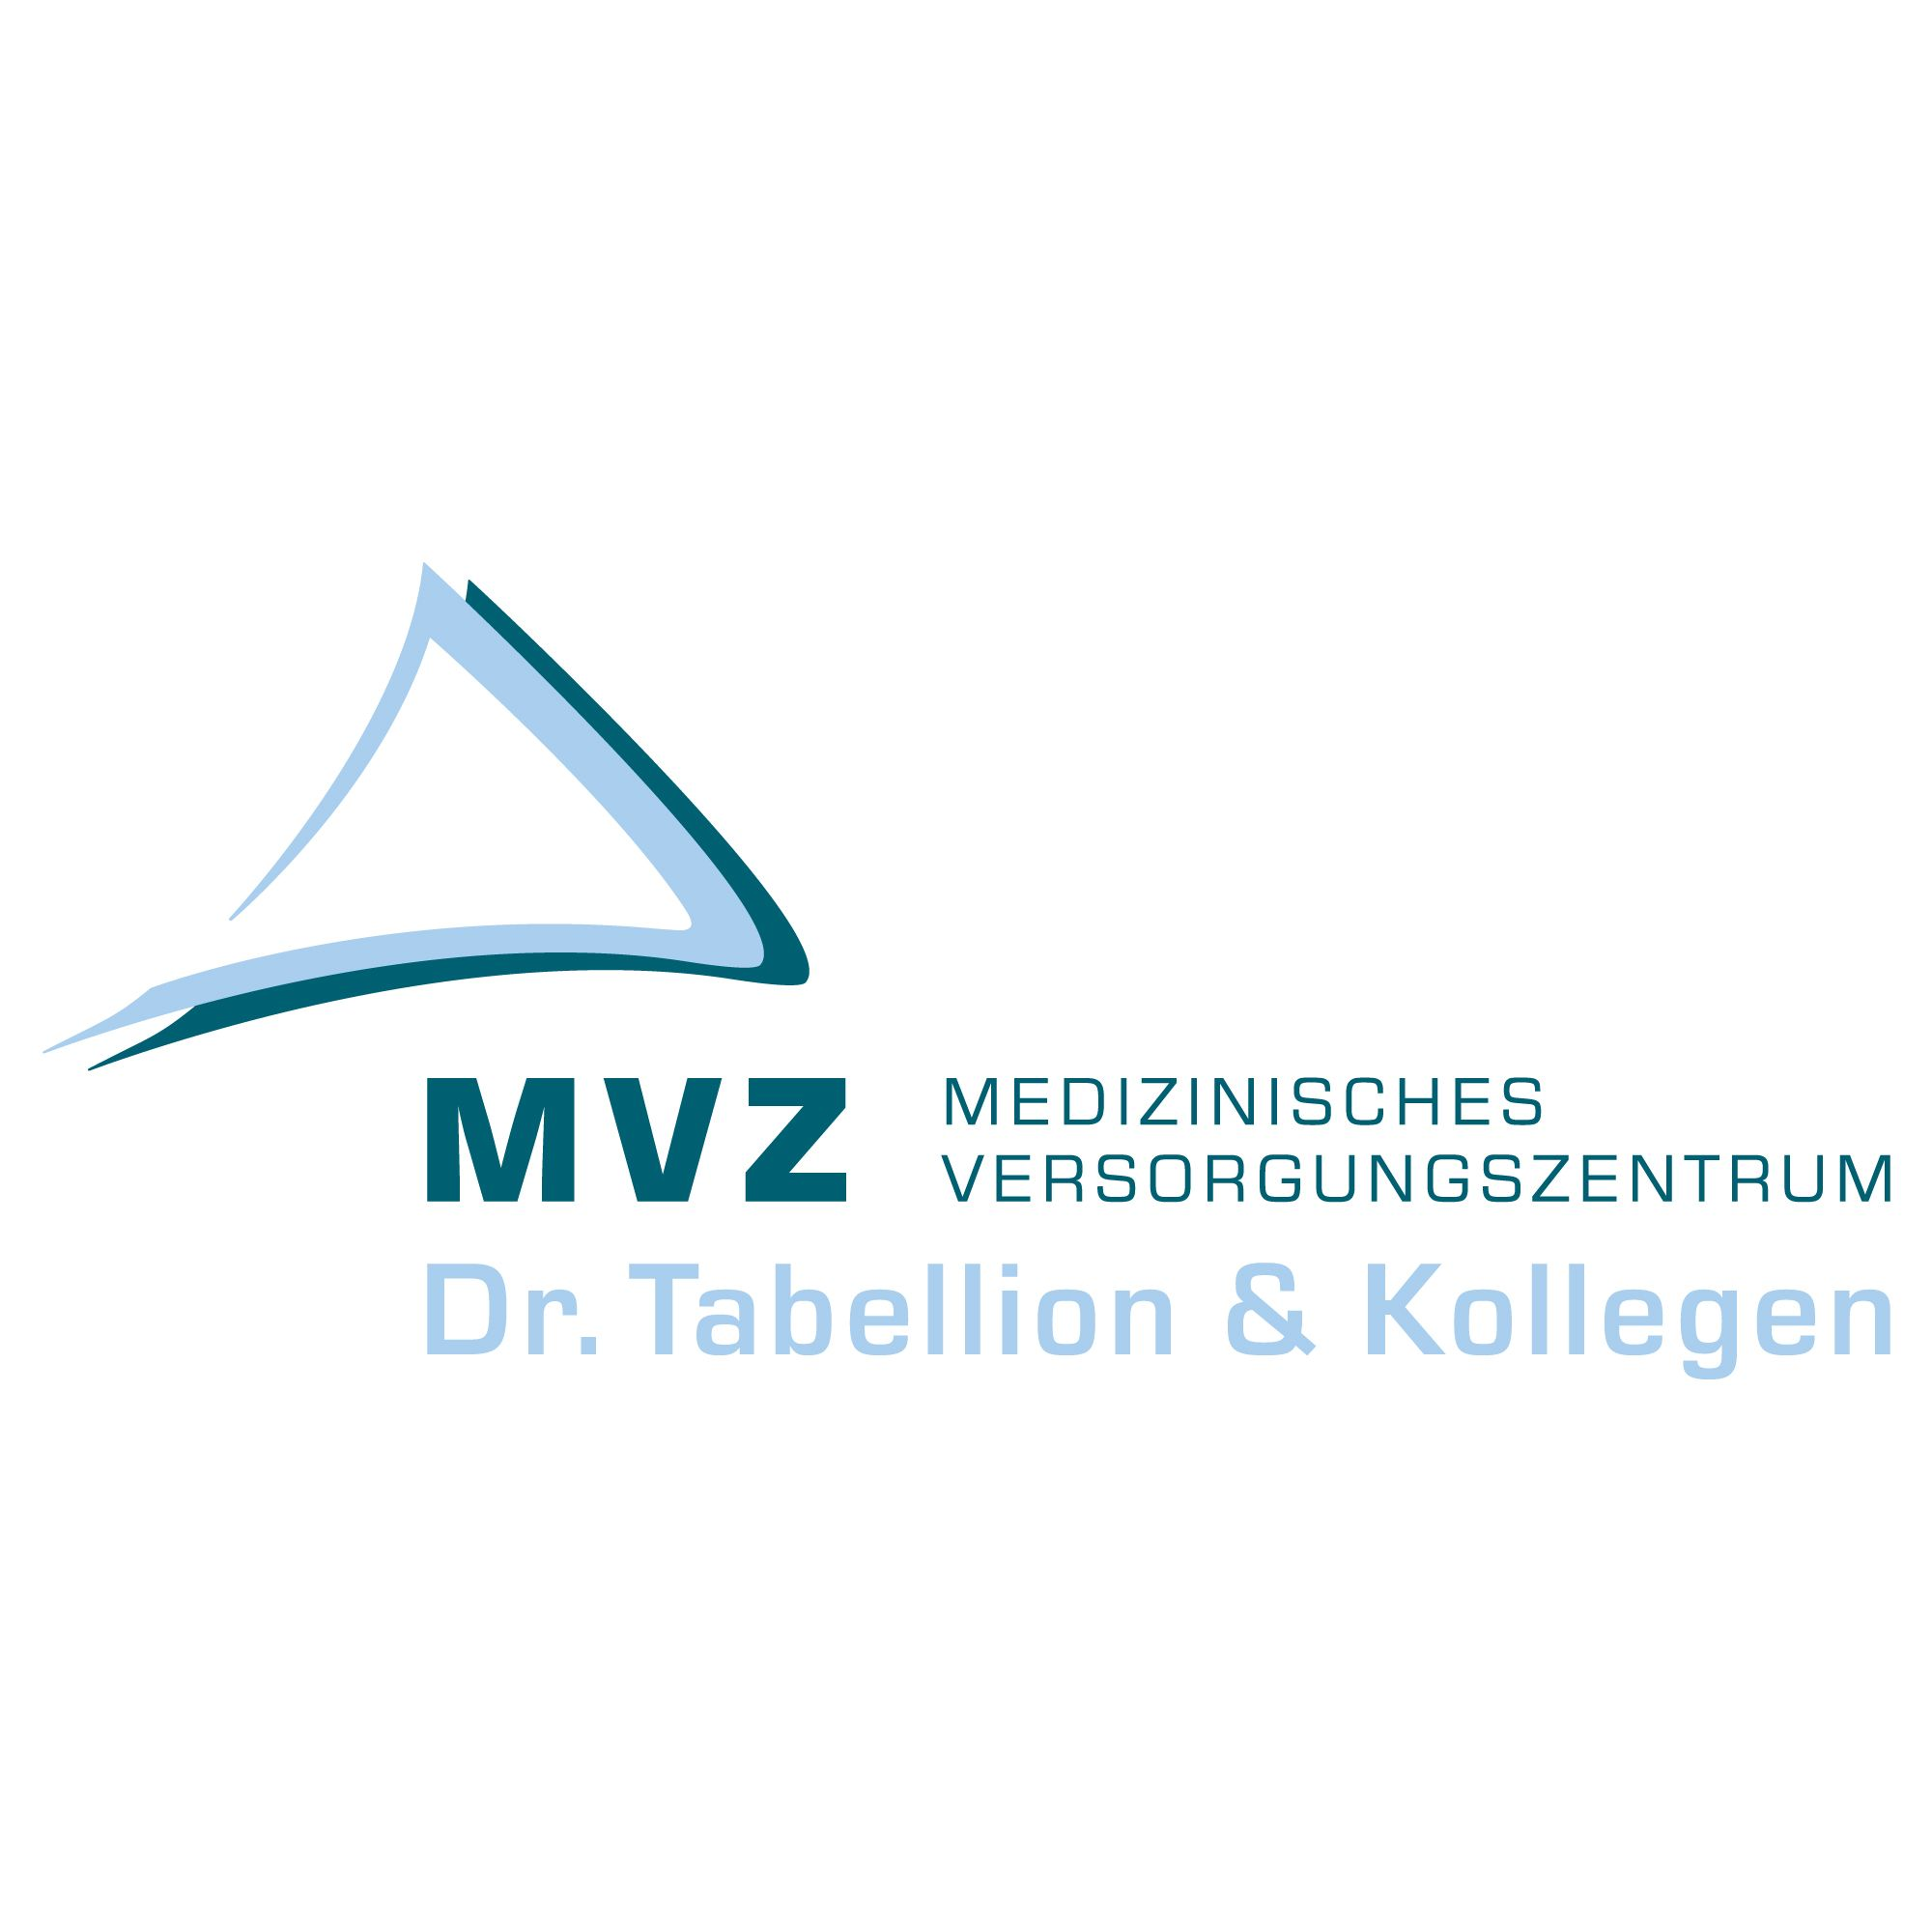 Medizinisches Versorgungszentrum (MVZ) Dr. Joachim Tabellion & Kollegen GmbH in Lahr im Schwarzwald - Logo